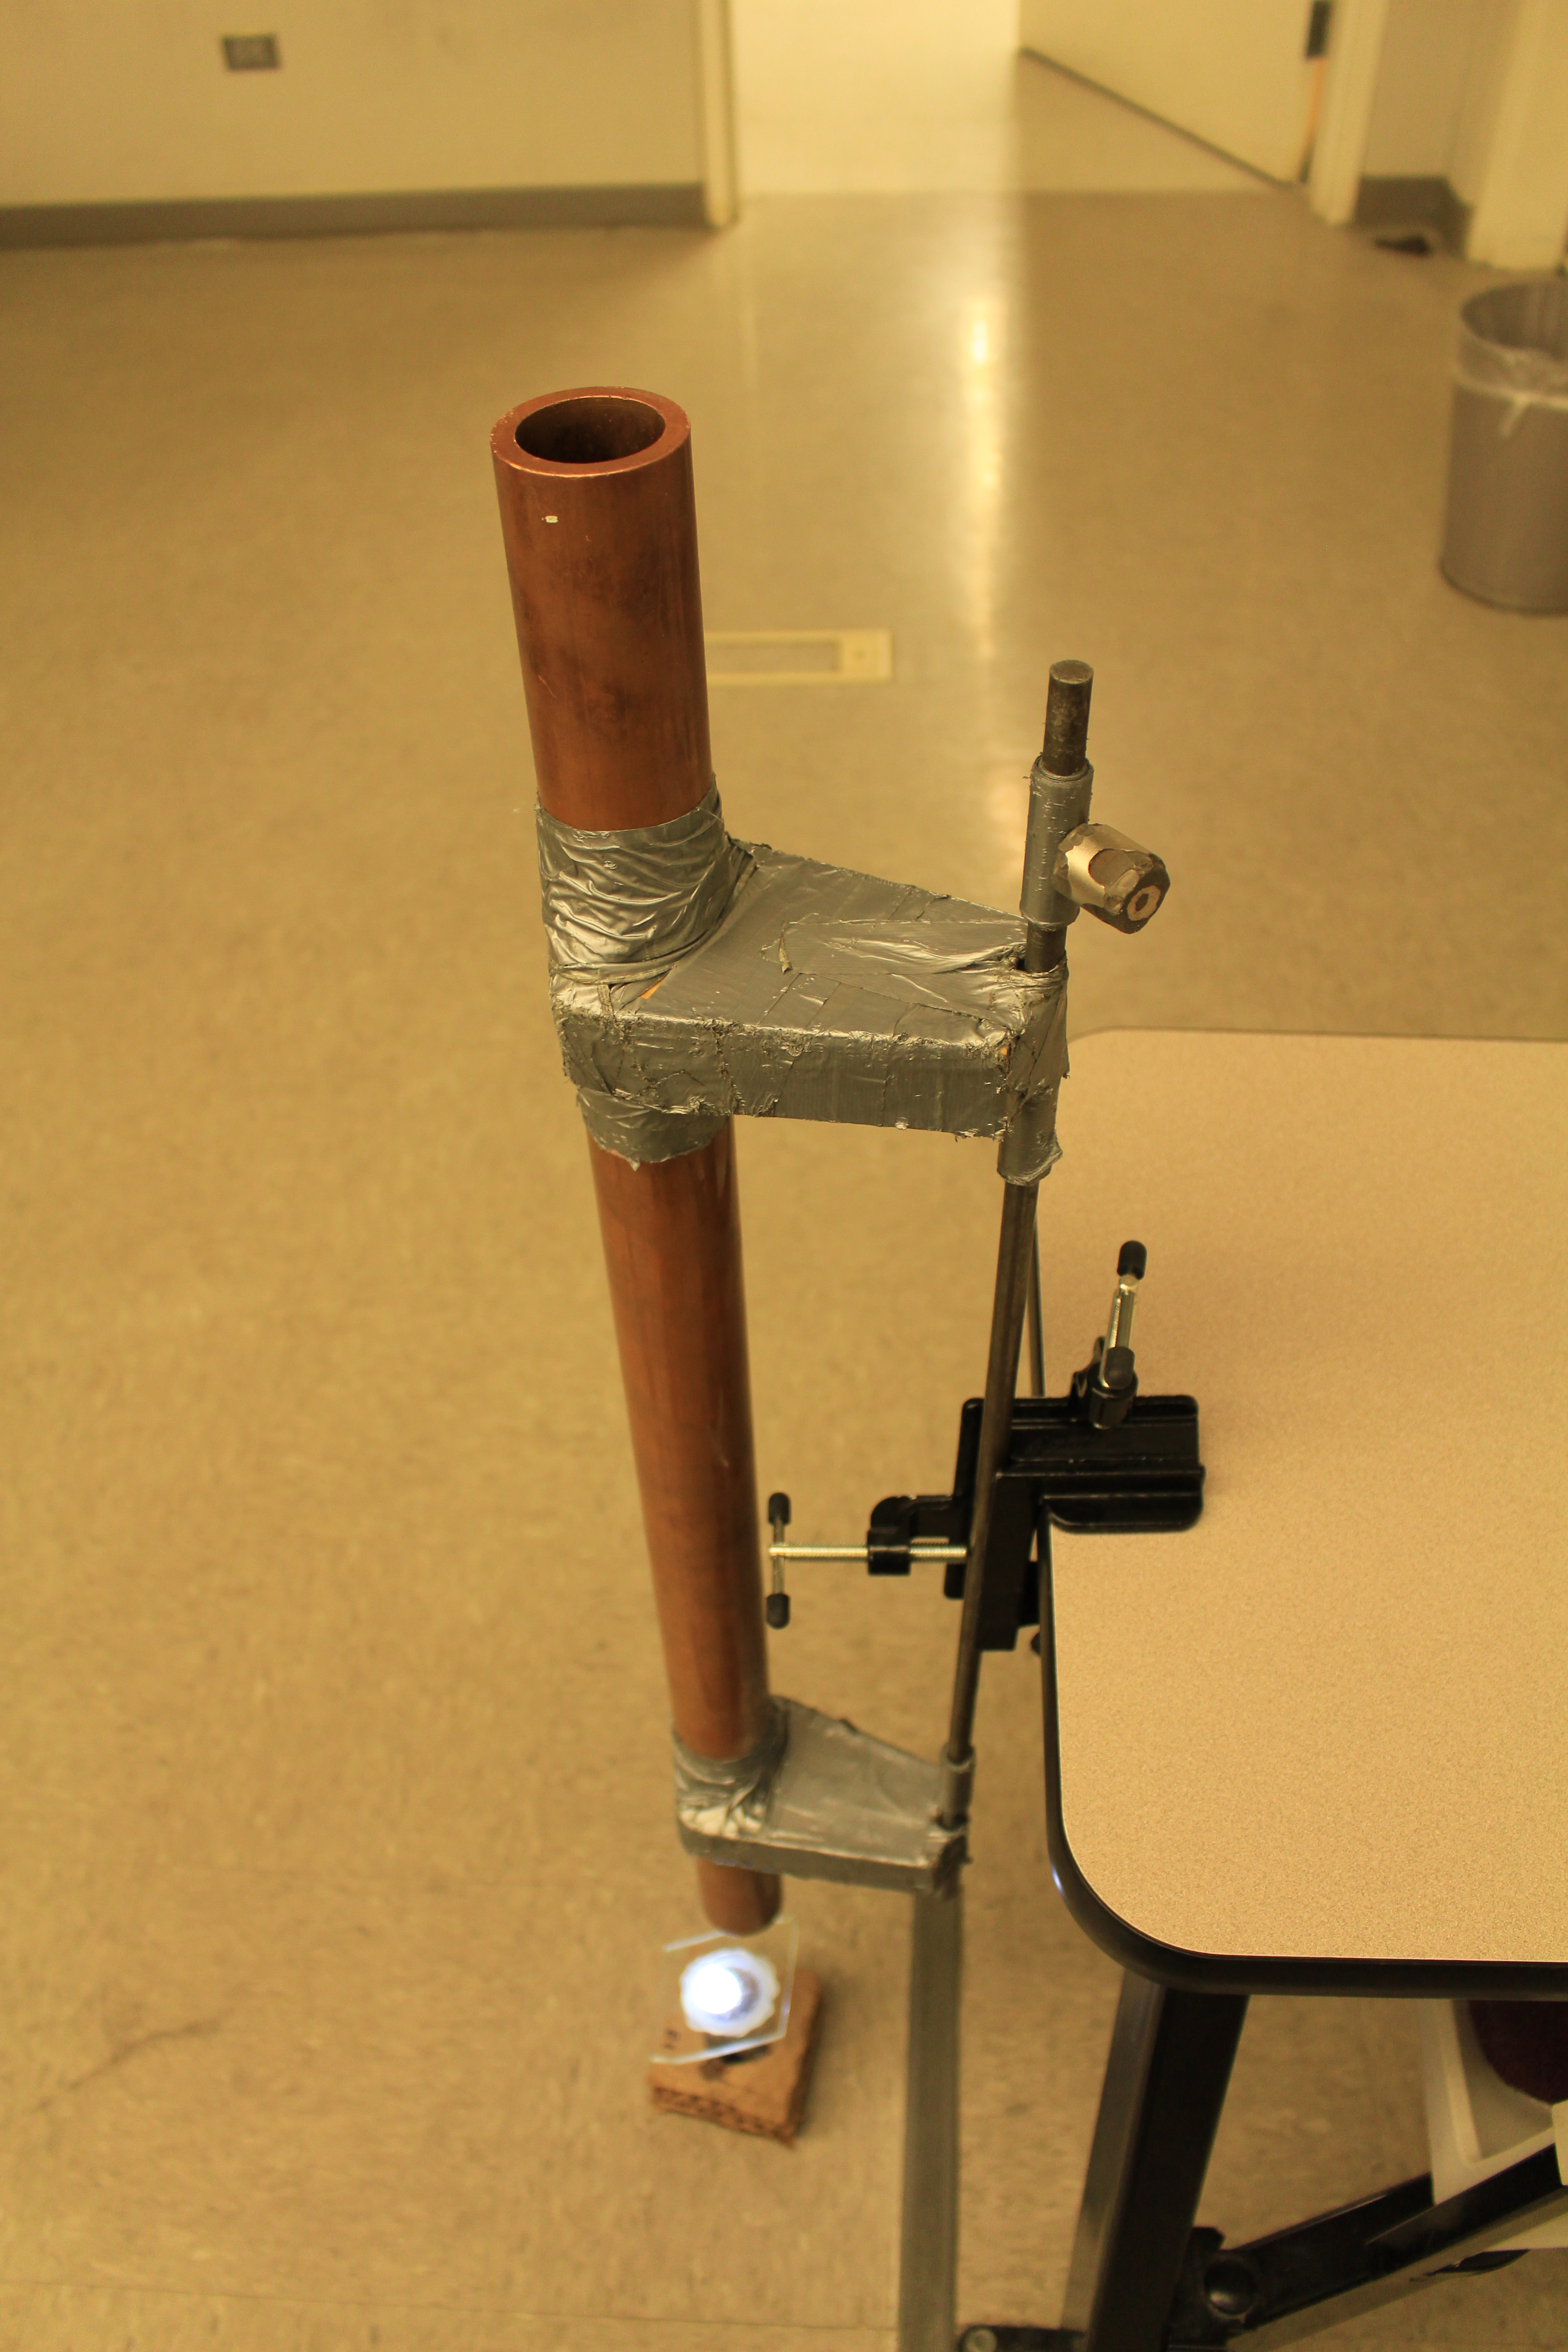 A copper tube